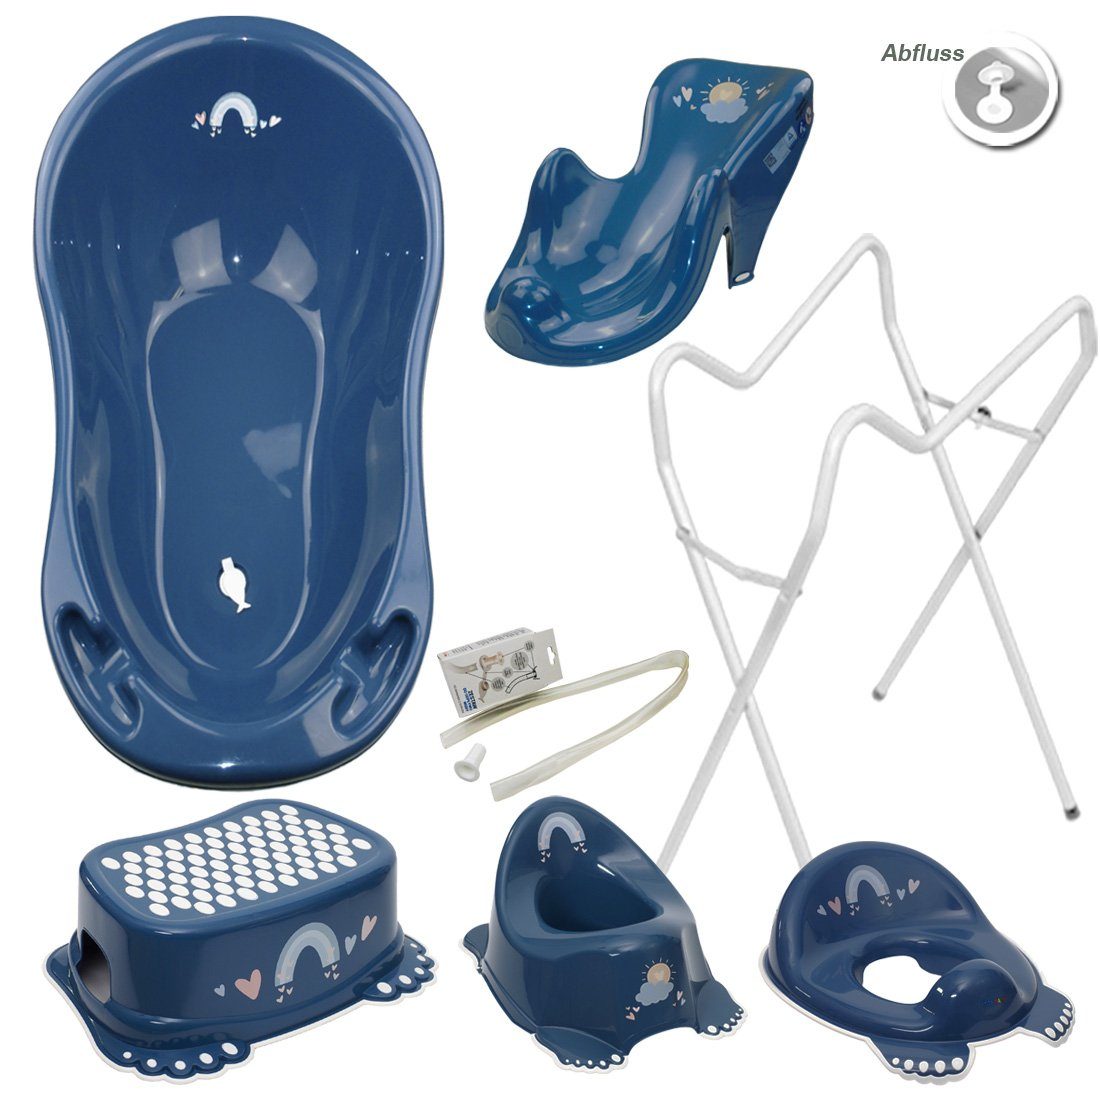 Tega-Baby Babybadewanne 6 Teile SET AB- METEO Blau + Ständer Weiß -Abflussset Babybadeset, (Made in Europe Premium.set), Wanne + Sitz + Töpfchen + WC Aufsatz + Hocker + Ablauf Set+ Ständer